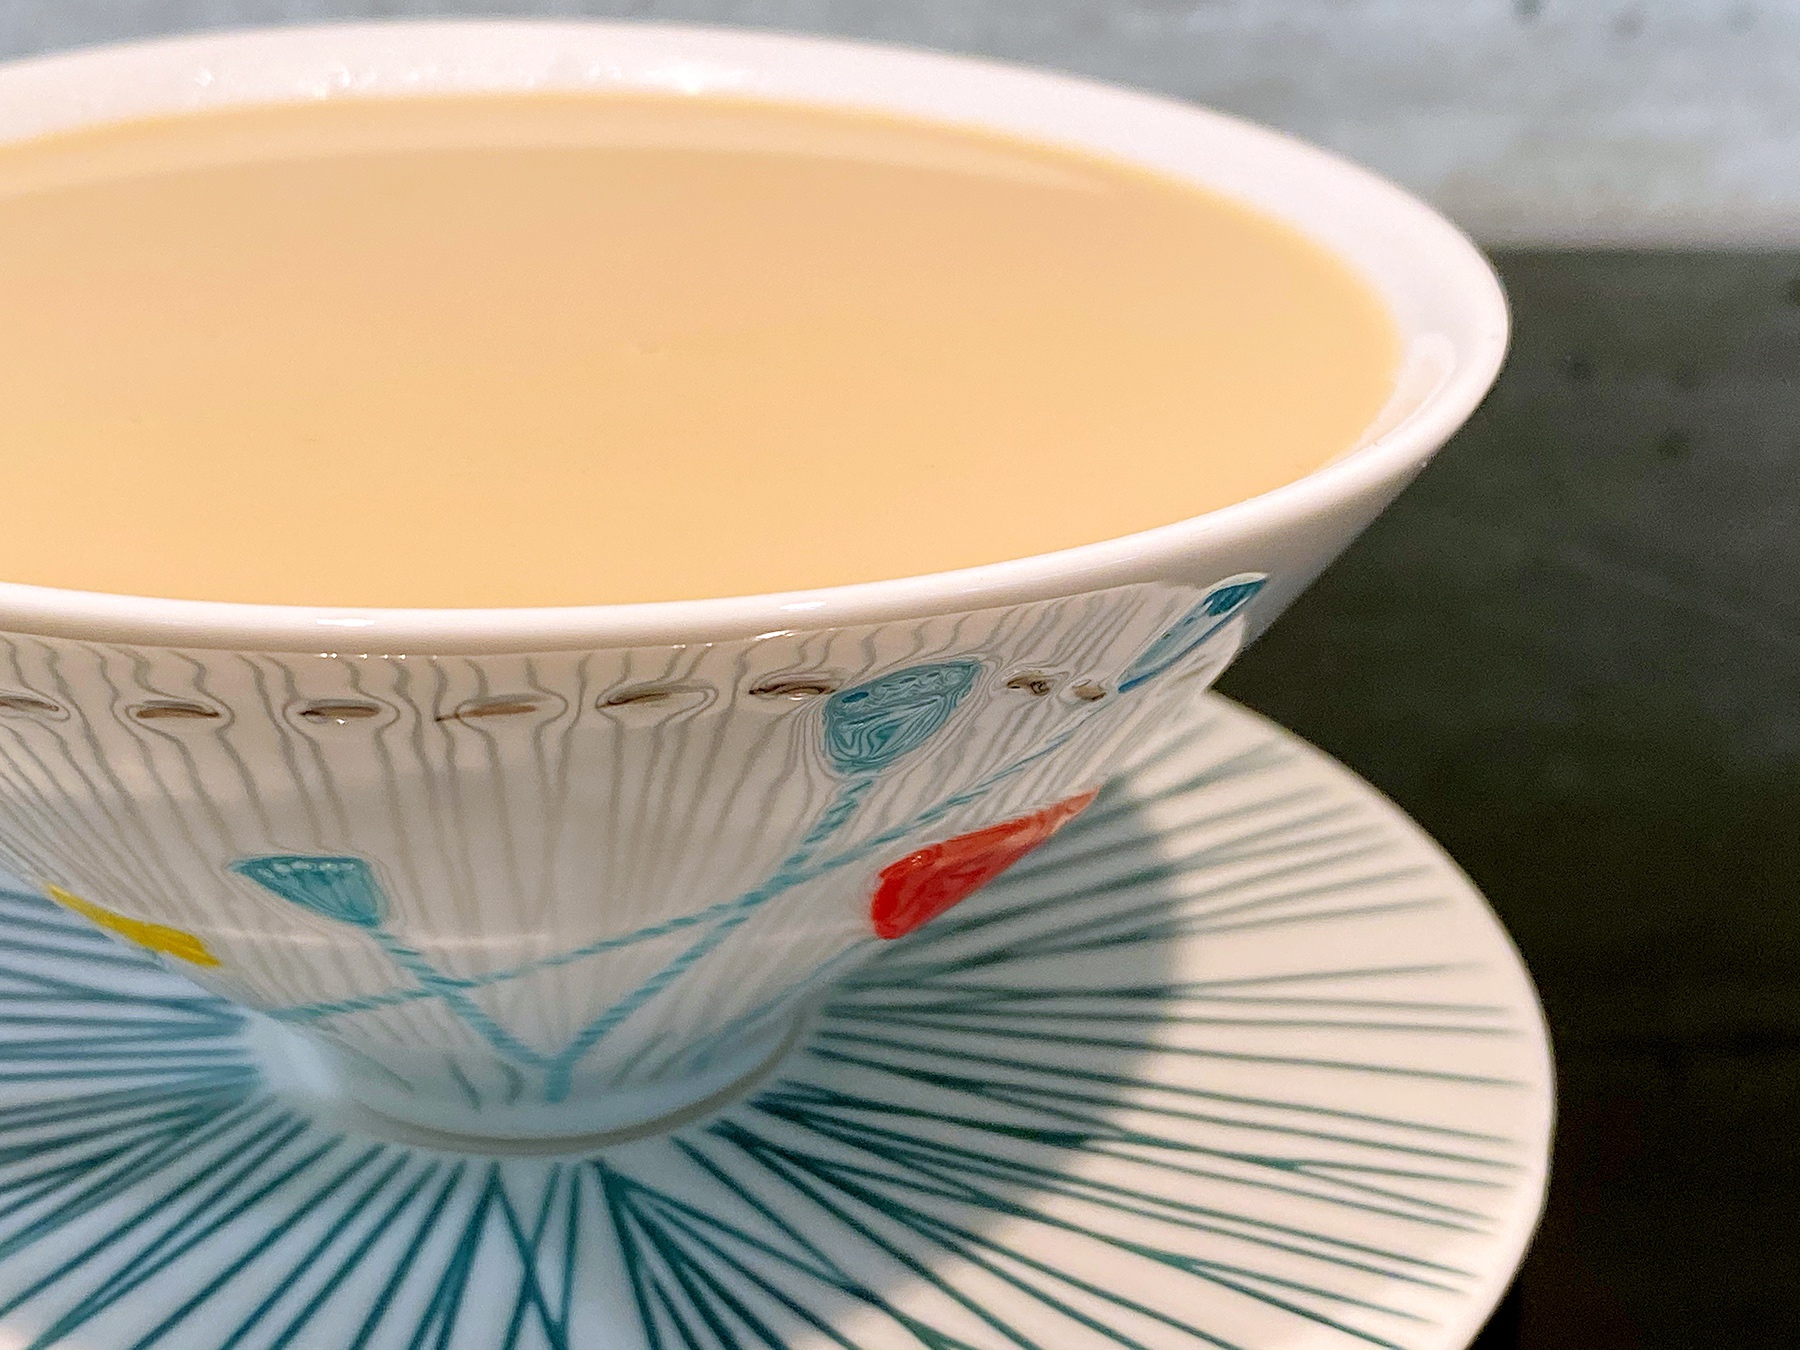 这杯醇香馥郁的奶茶只有一味关键调味剂 周末午后 阳光暖暖 你也可以如我一般悠然自得的做法